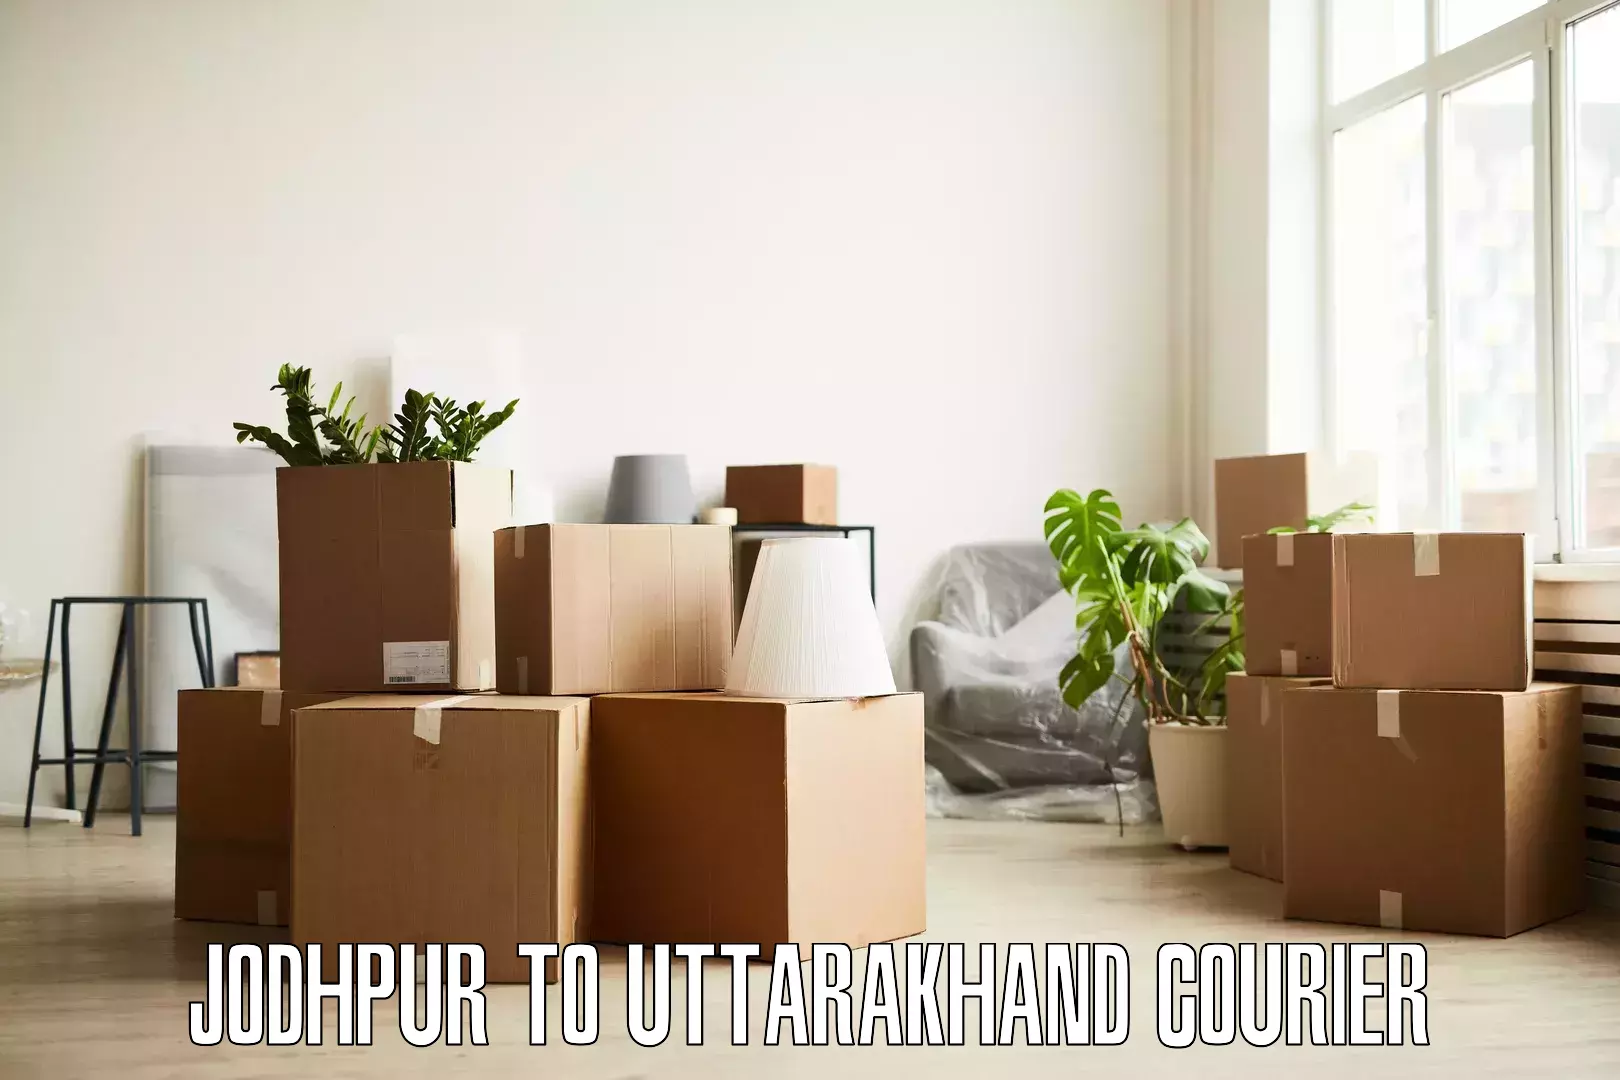 Skilled furniture movers Jodhpur to Kotdwara